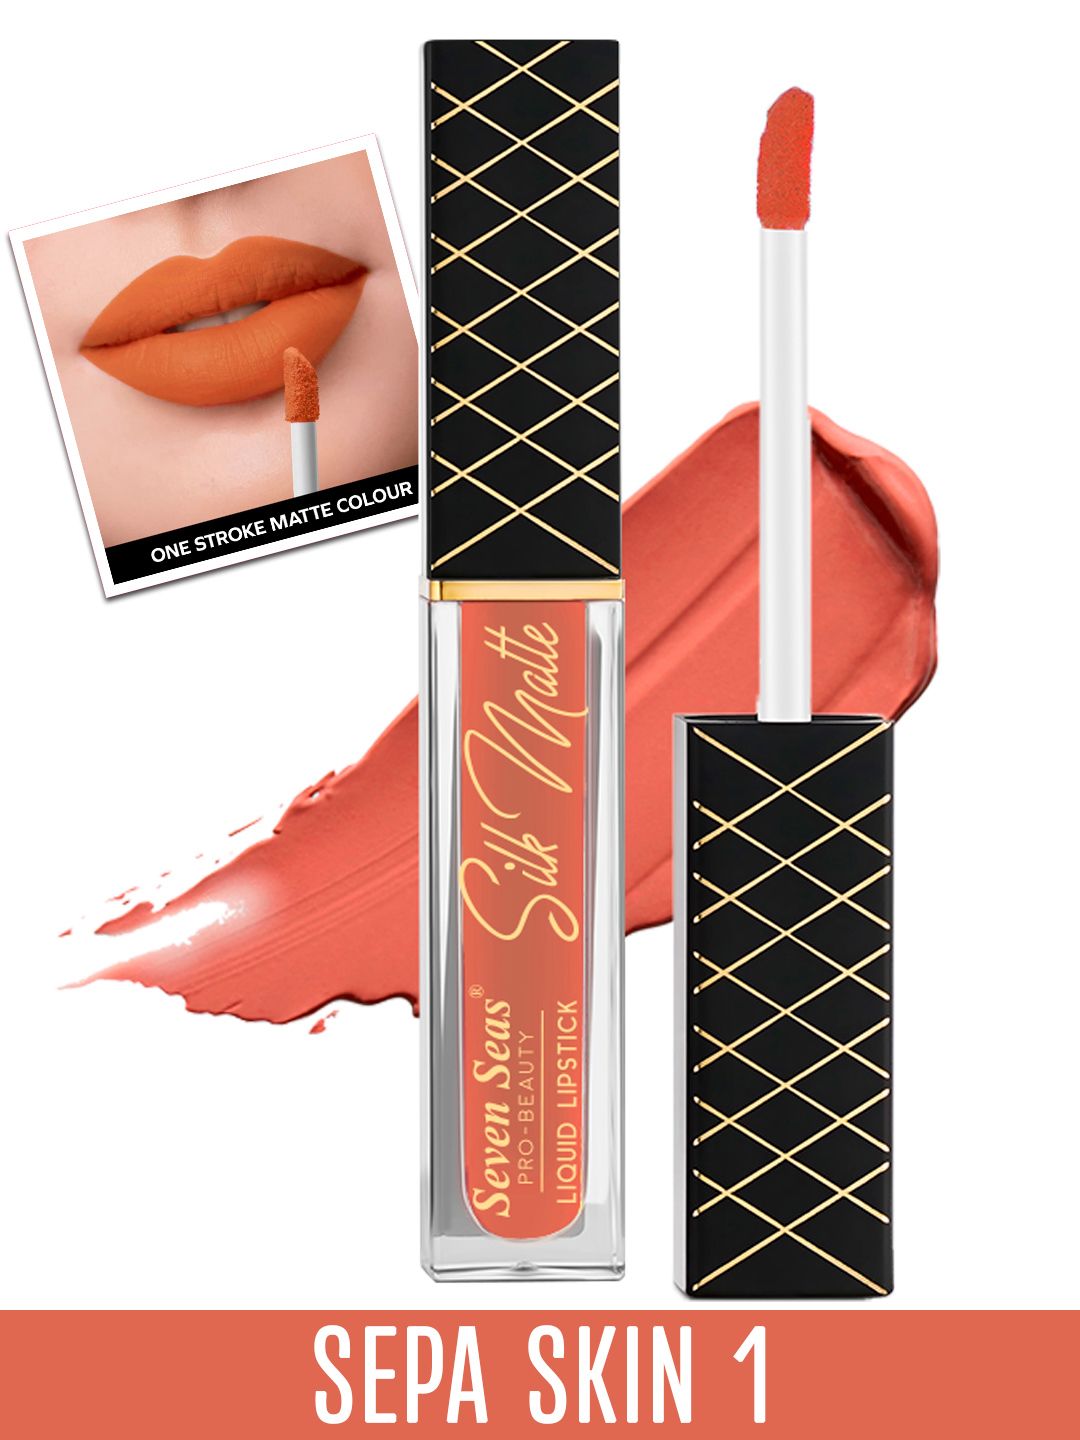 Seven Seas Transfer Proof Silk Matte Liquid Lipstick 8 g - Sepa Skin 1 Price in India